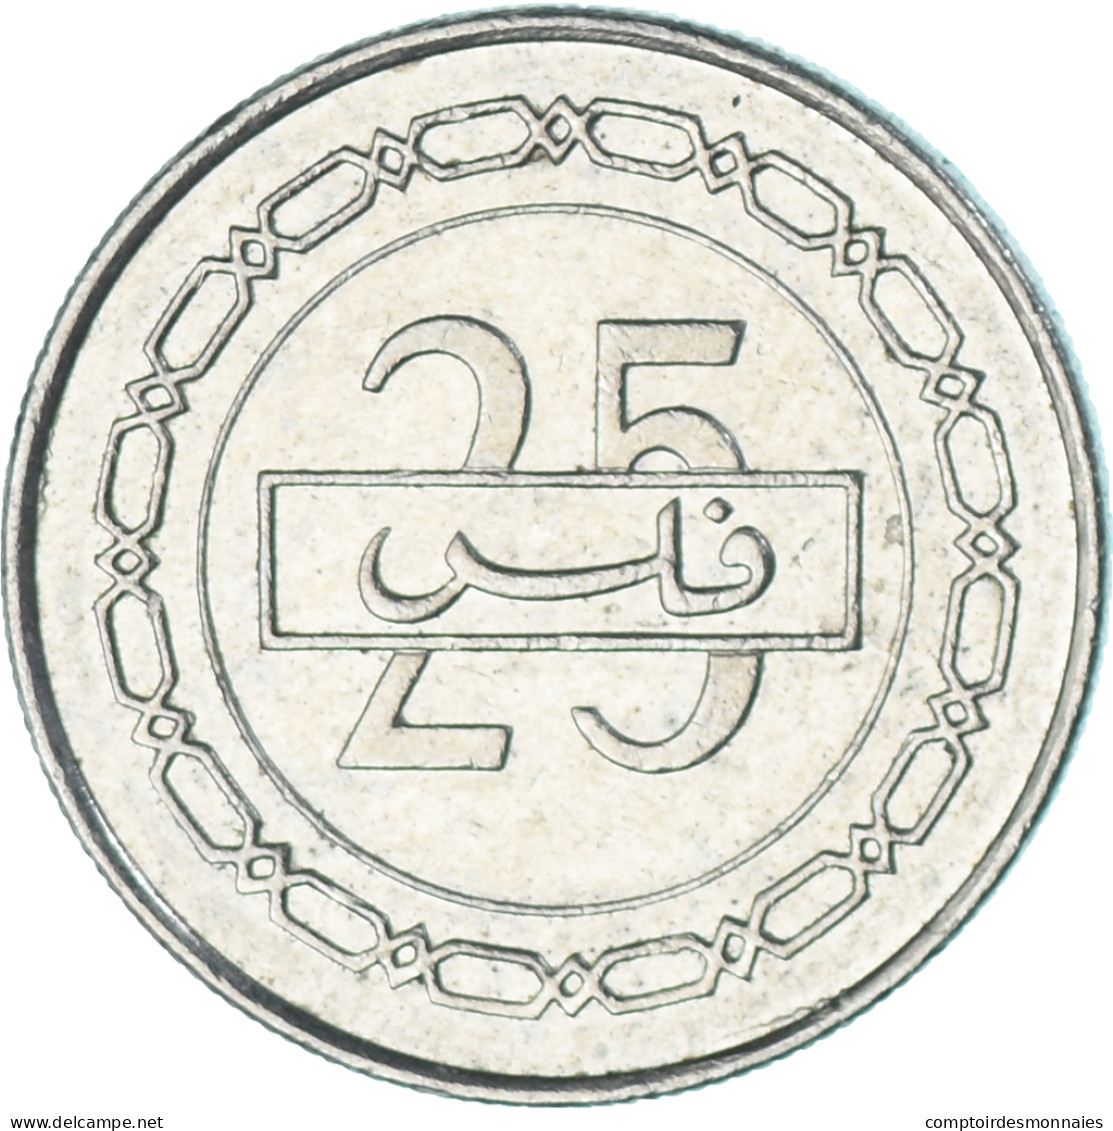 Monnaie, Bahrain, 25 Fils, 2002 - Bahreïn